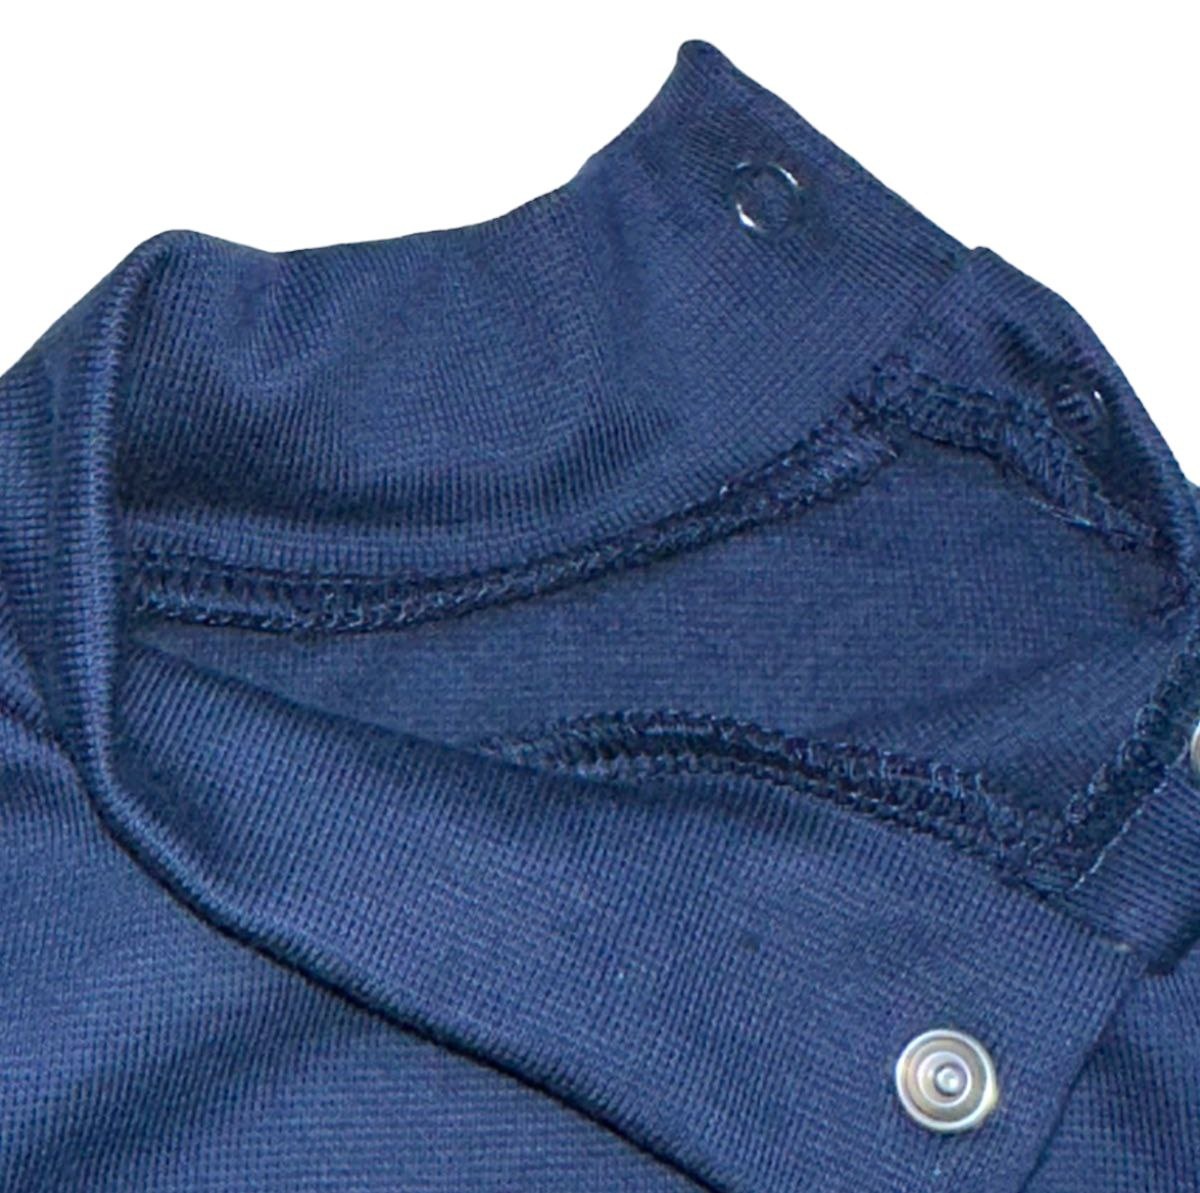 Комплект боди с брючками начесной стрейч интерлок тёмно-синего цвета, Темно-синий, 3-6 месяца, 68см